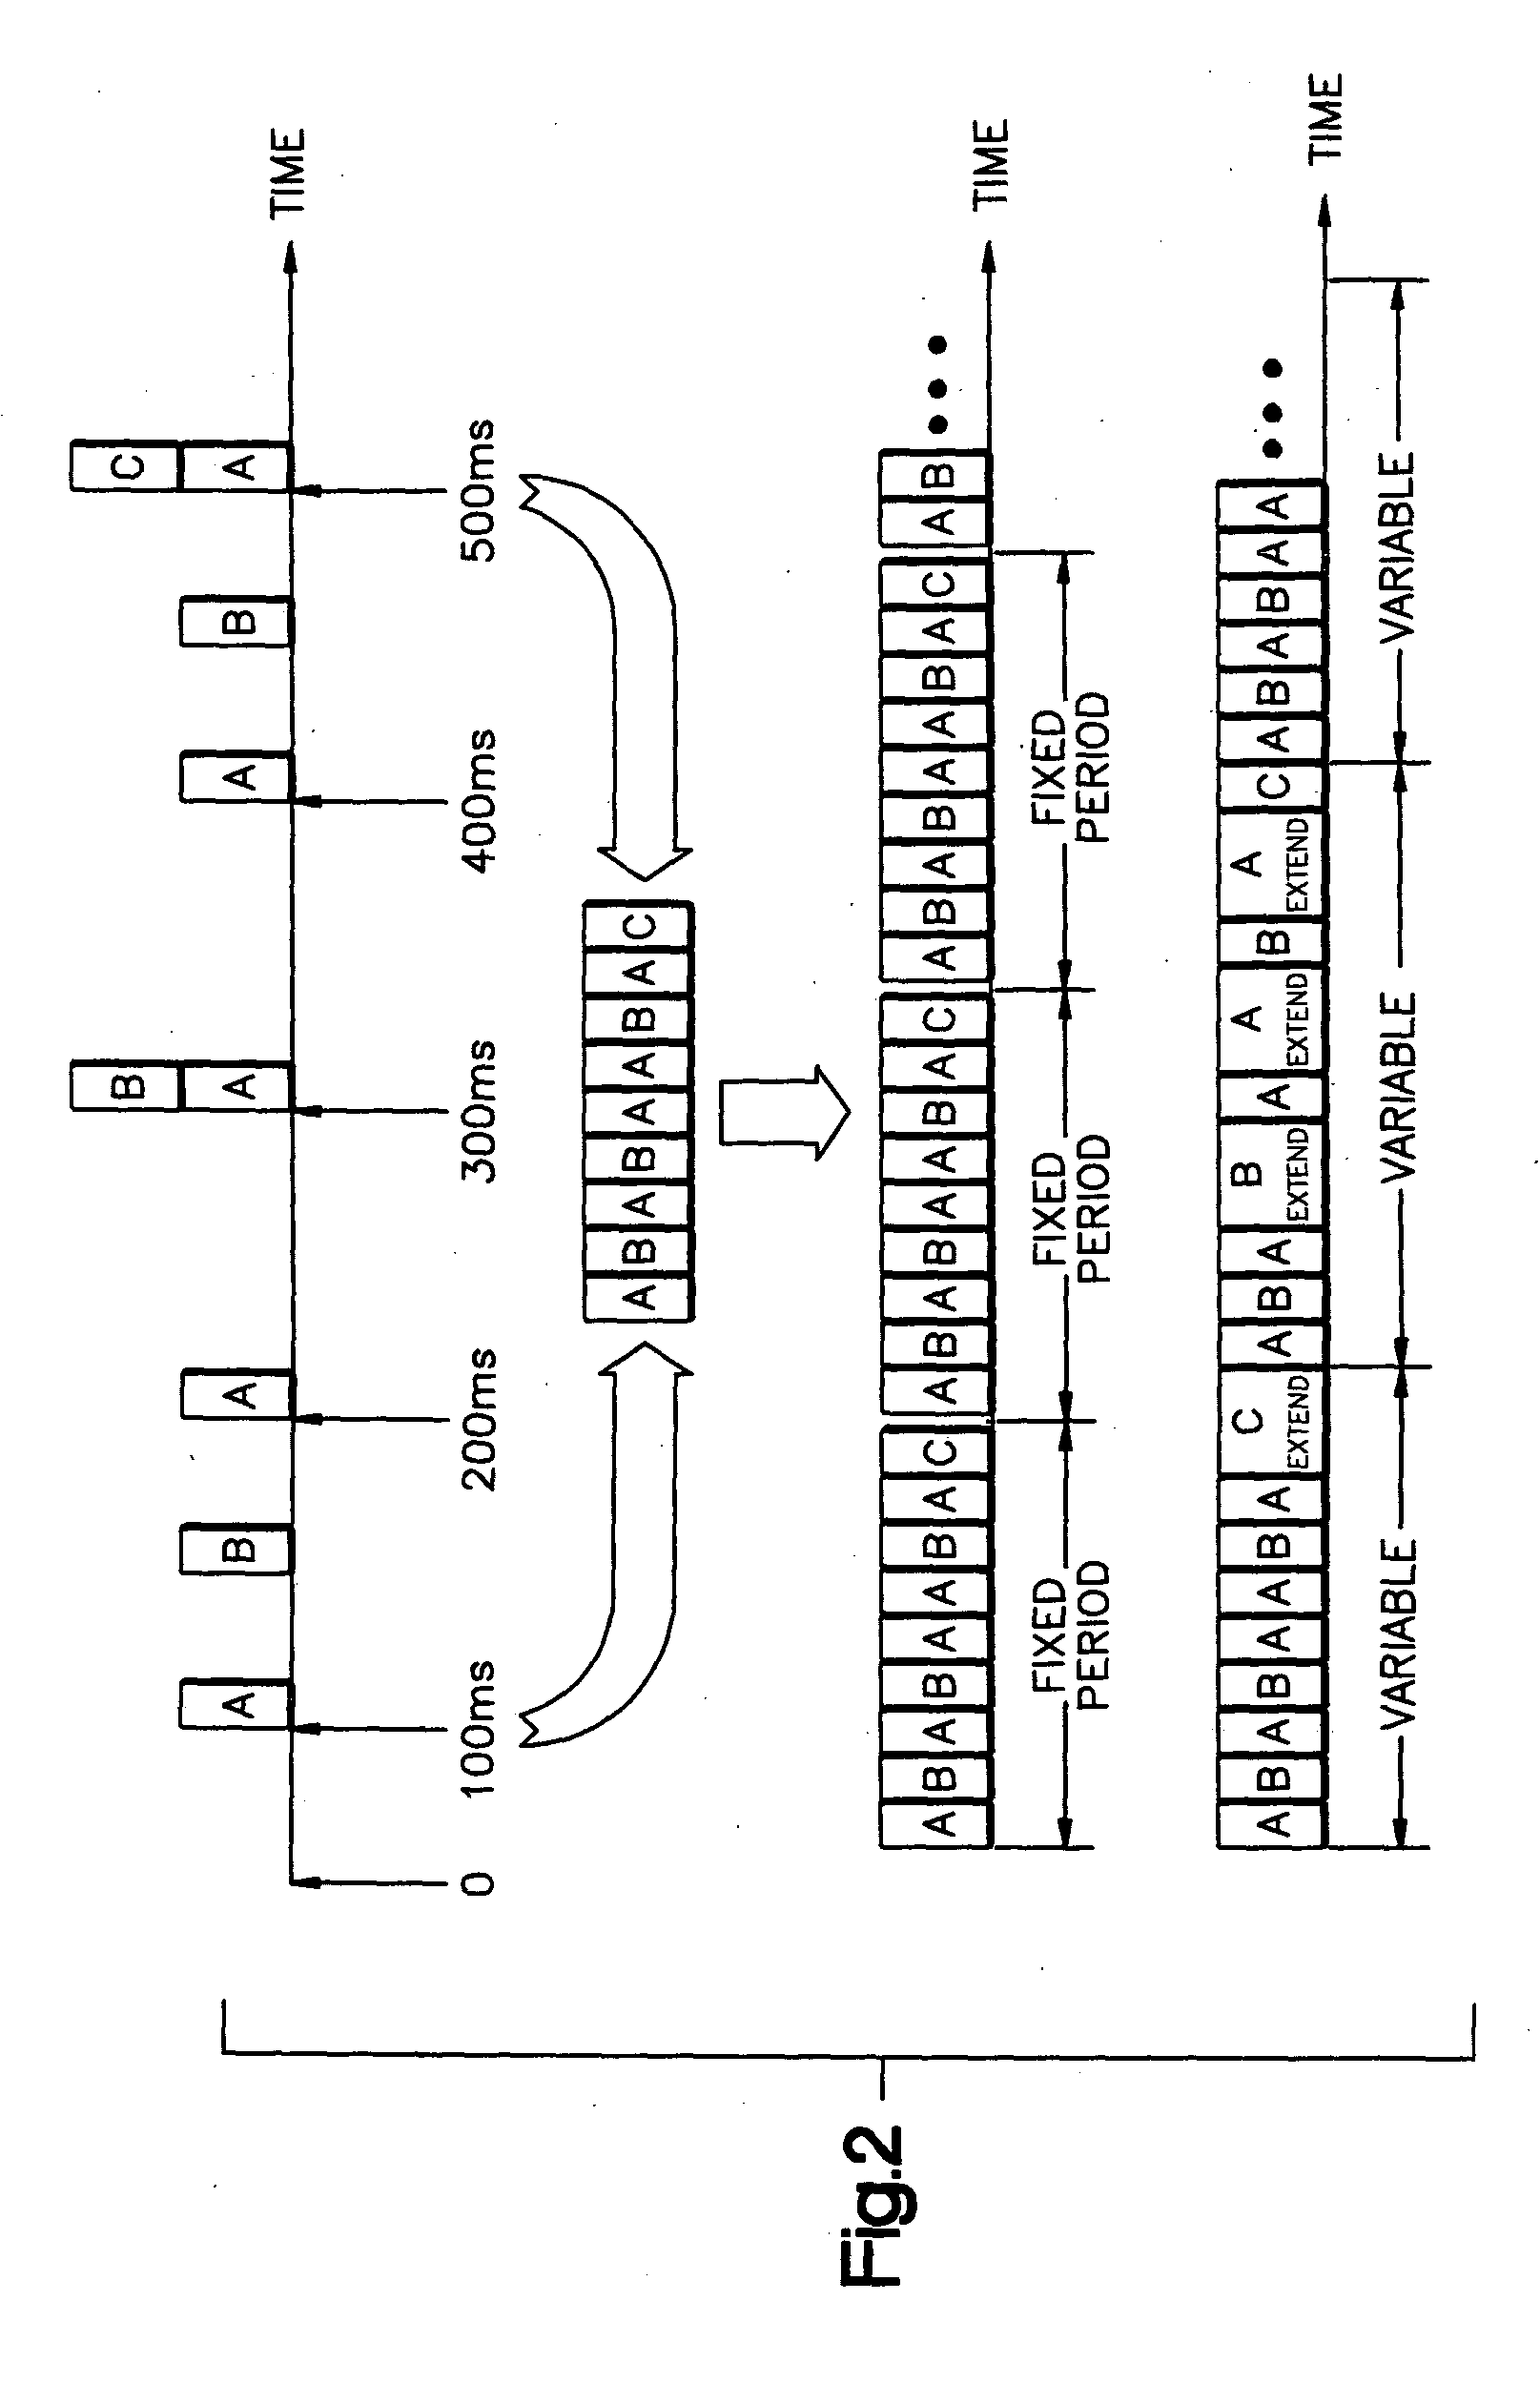 System for estimating receiver utilization